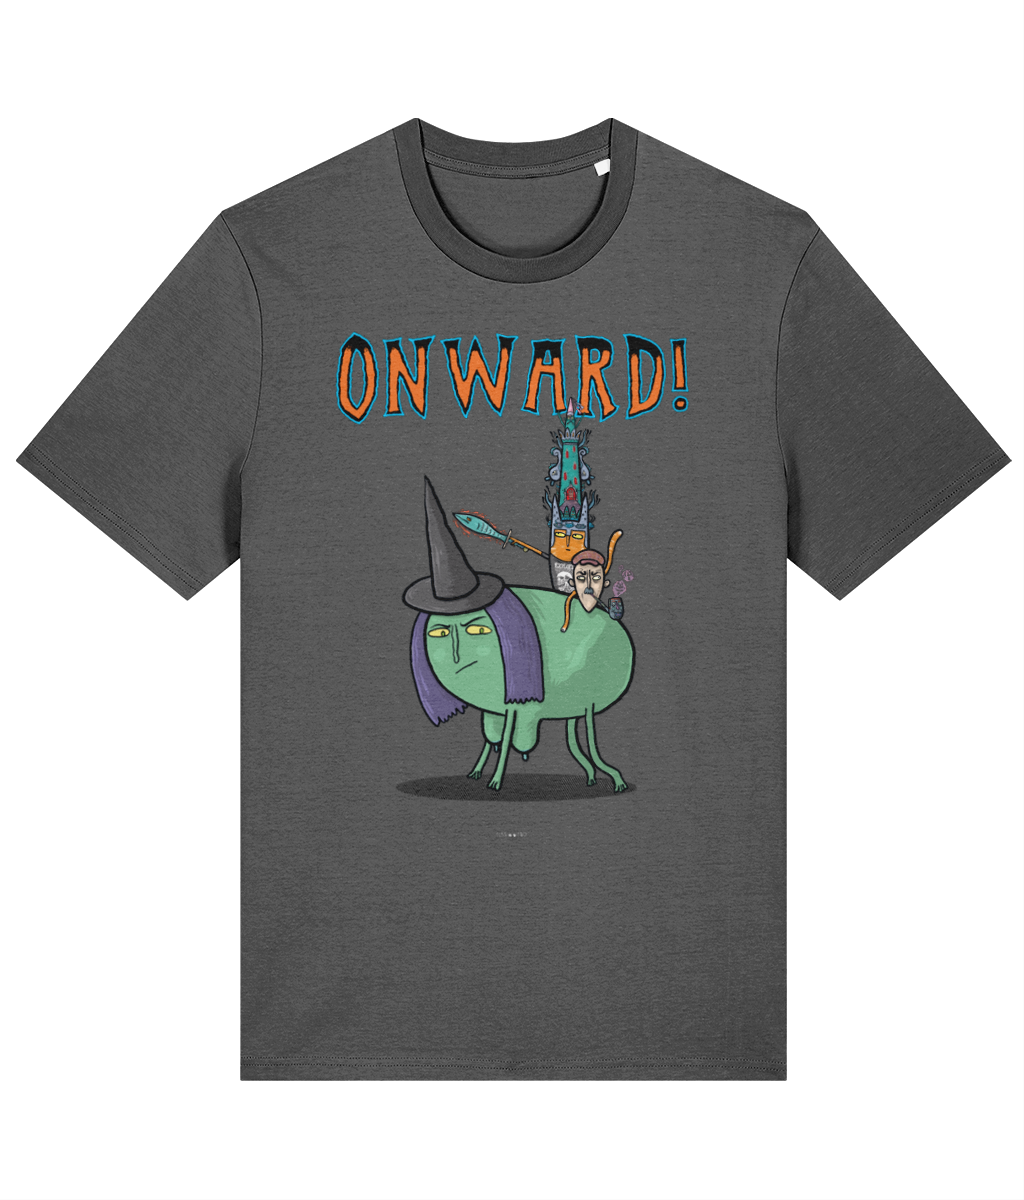 ONWARD! - Tussface T-shirt